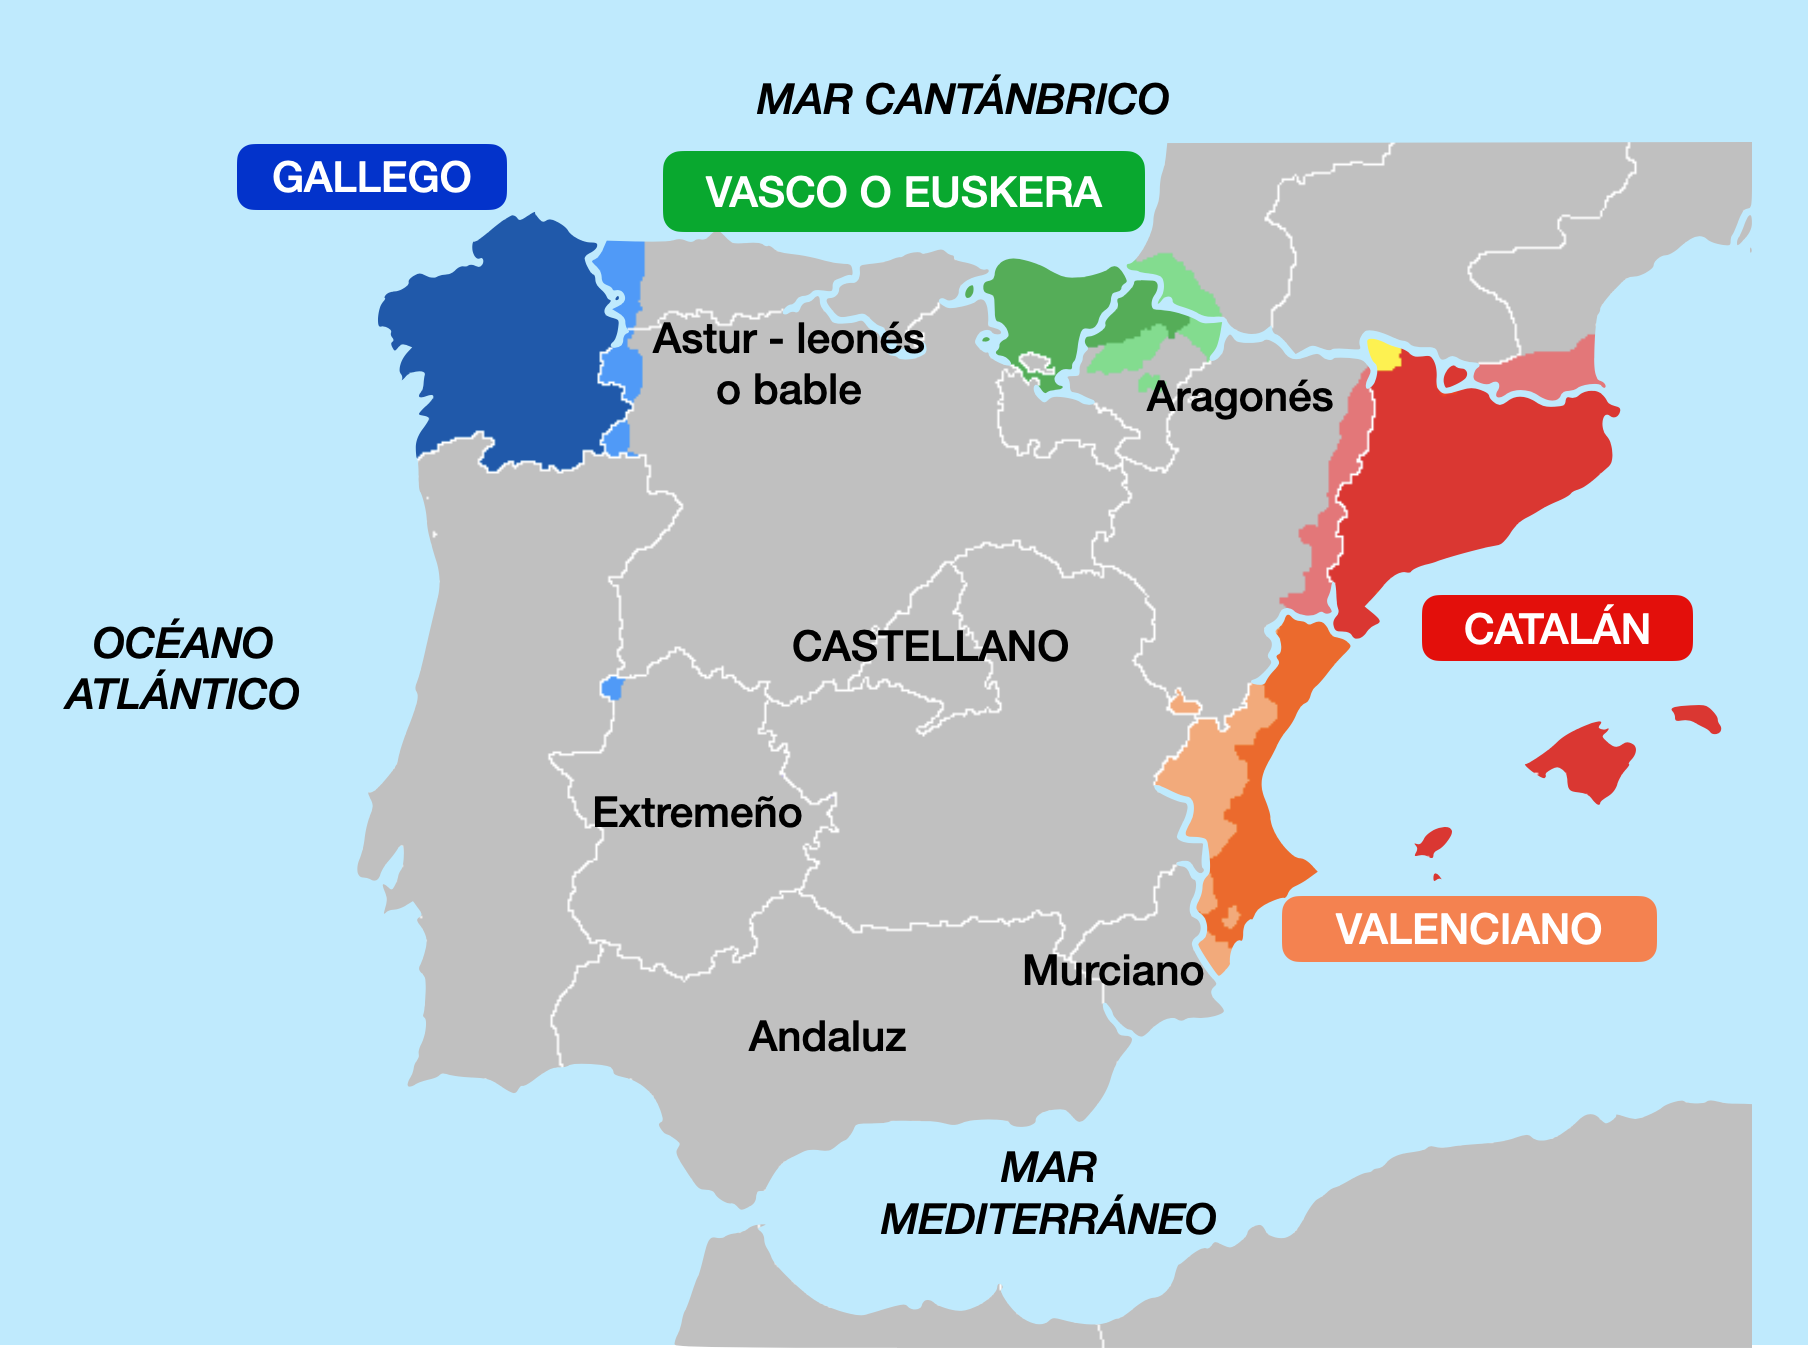 Mapa que señala las lenguas regionales de España utlizando diferentes colores.